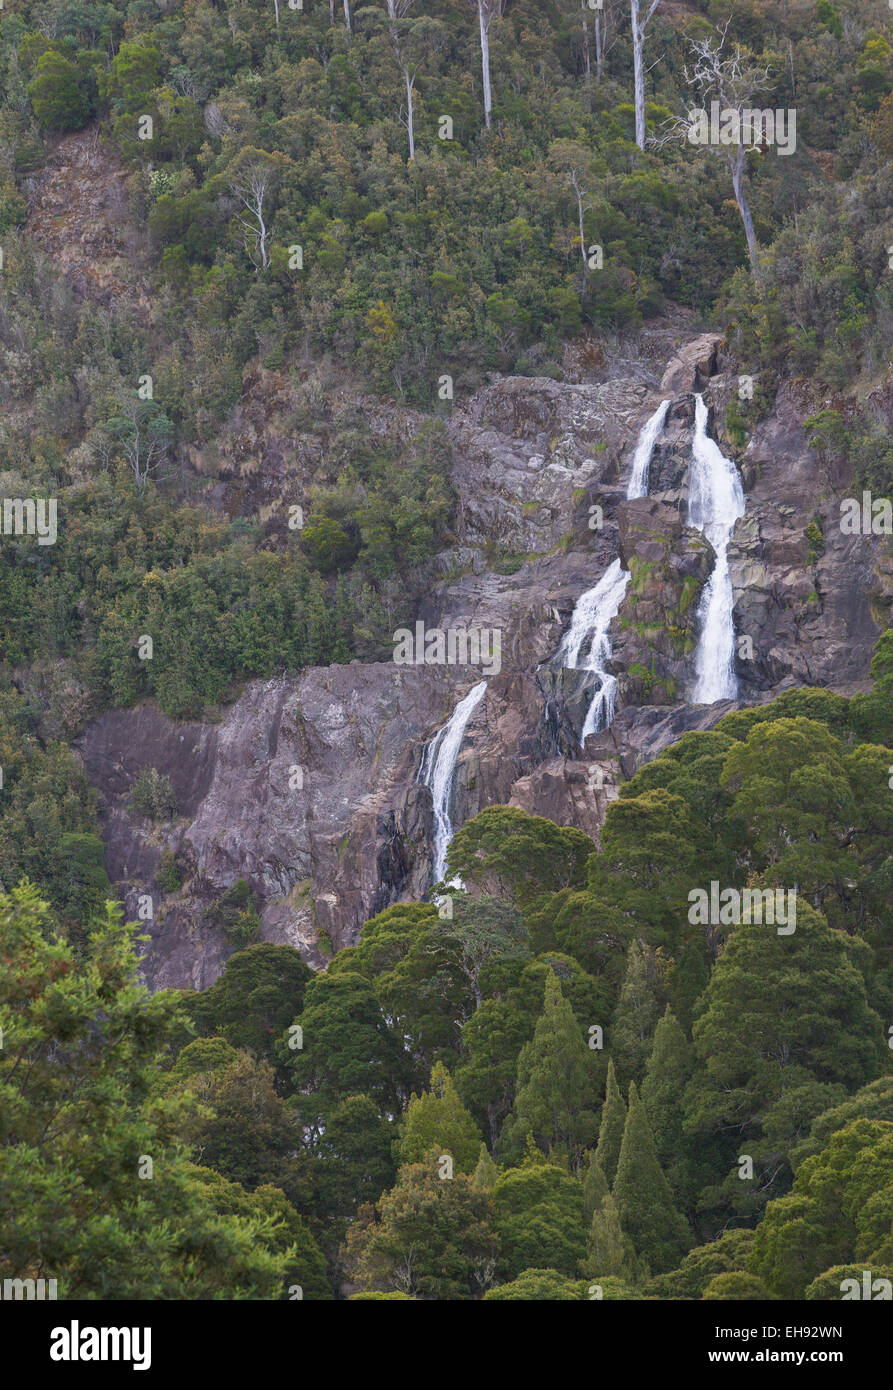 St. Columba fällt, Tasmanien, Australien Stockfoto